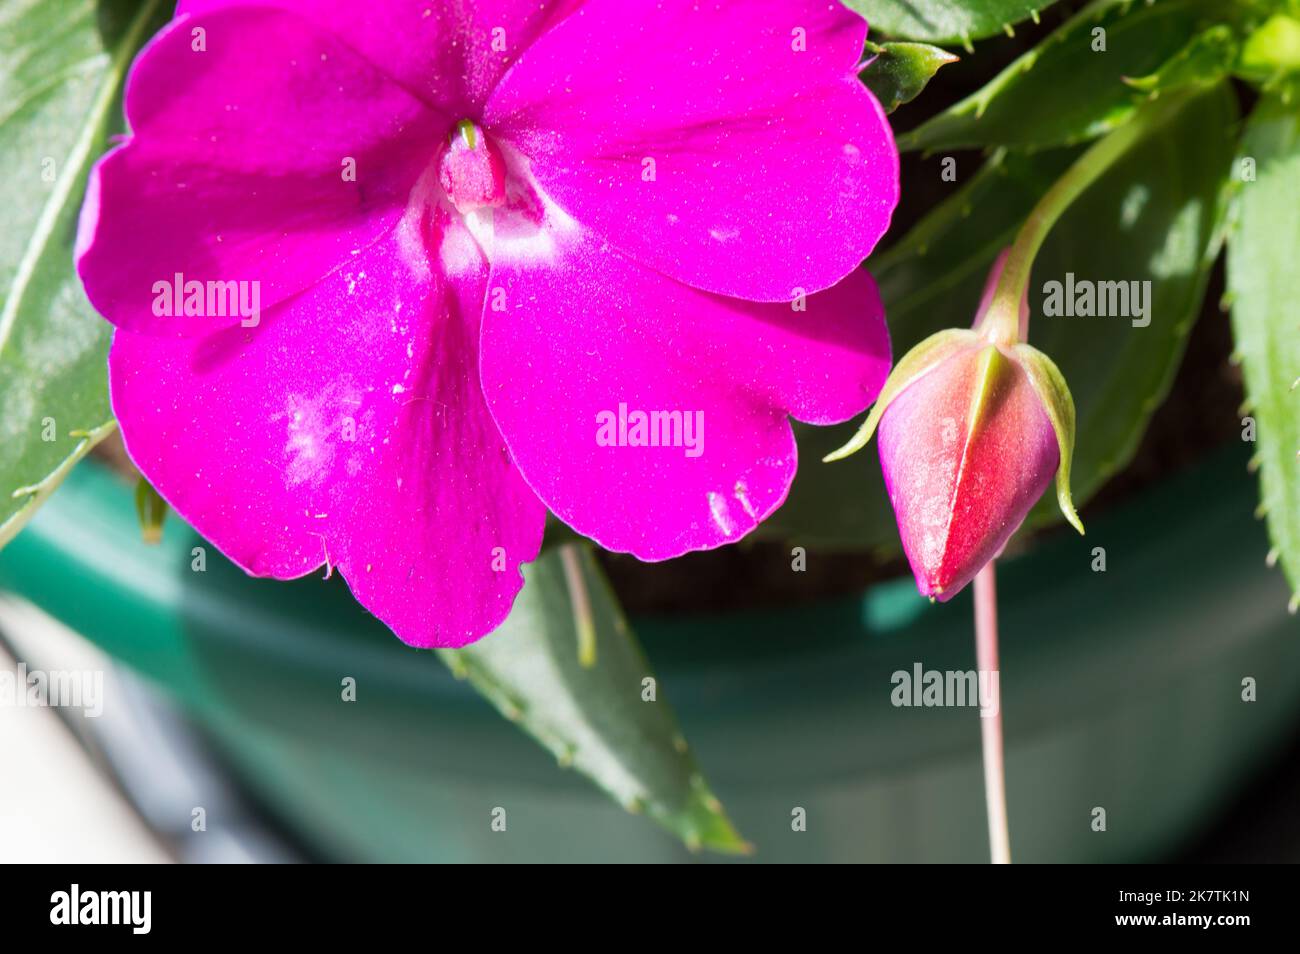 Nuovo fiore di cavia impatiens con colore fucsia vivo, fiore casa giardino Foto Stock